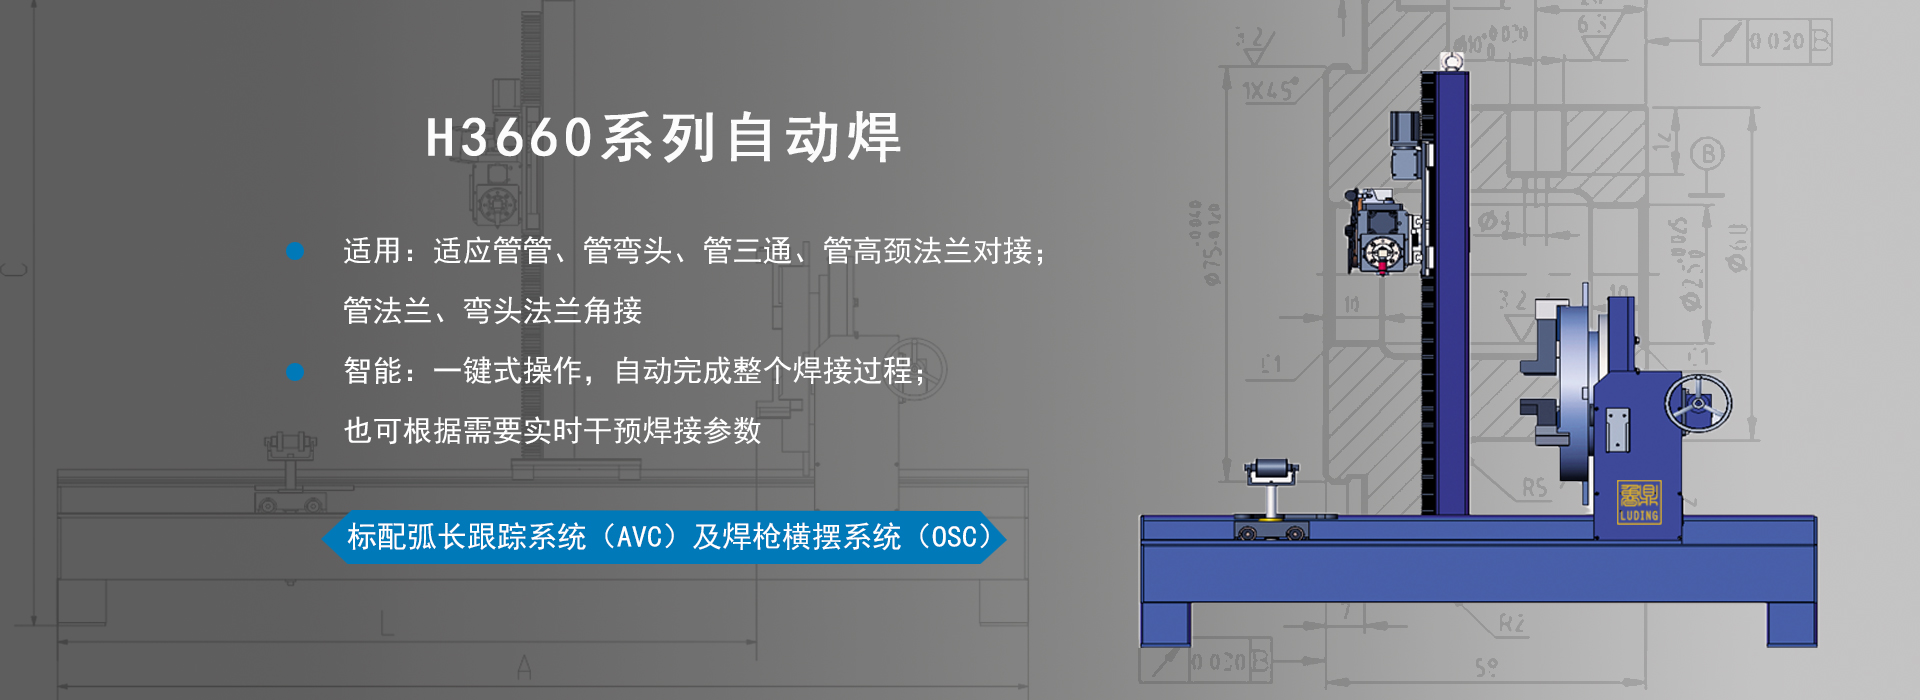 H3660系列自动焊接机